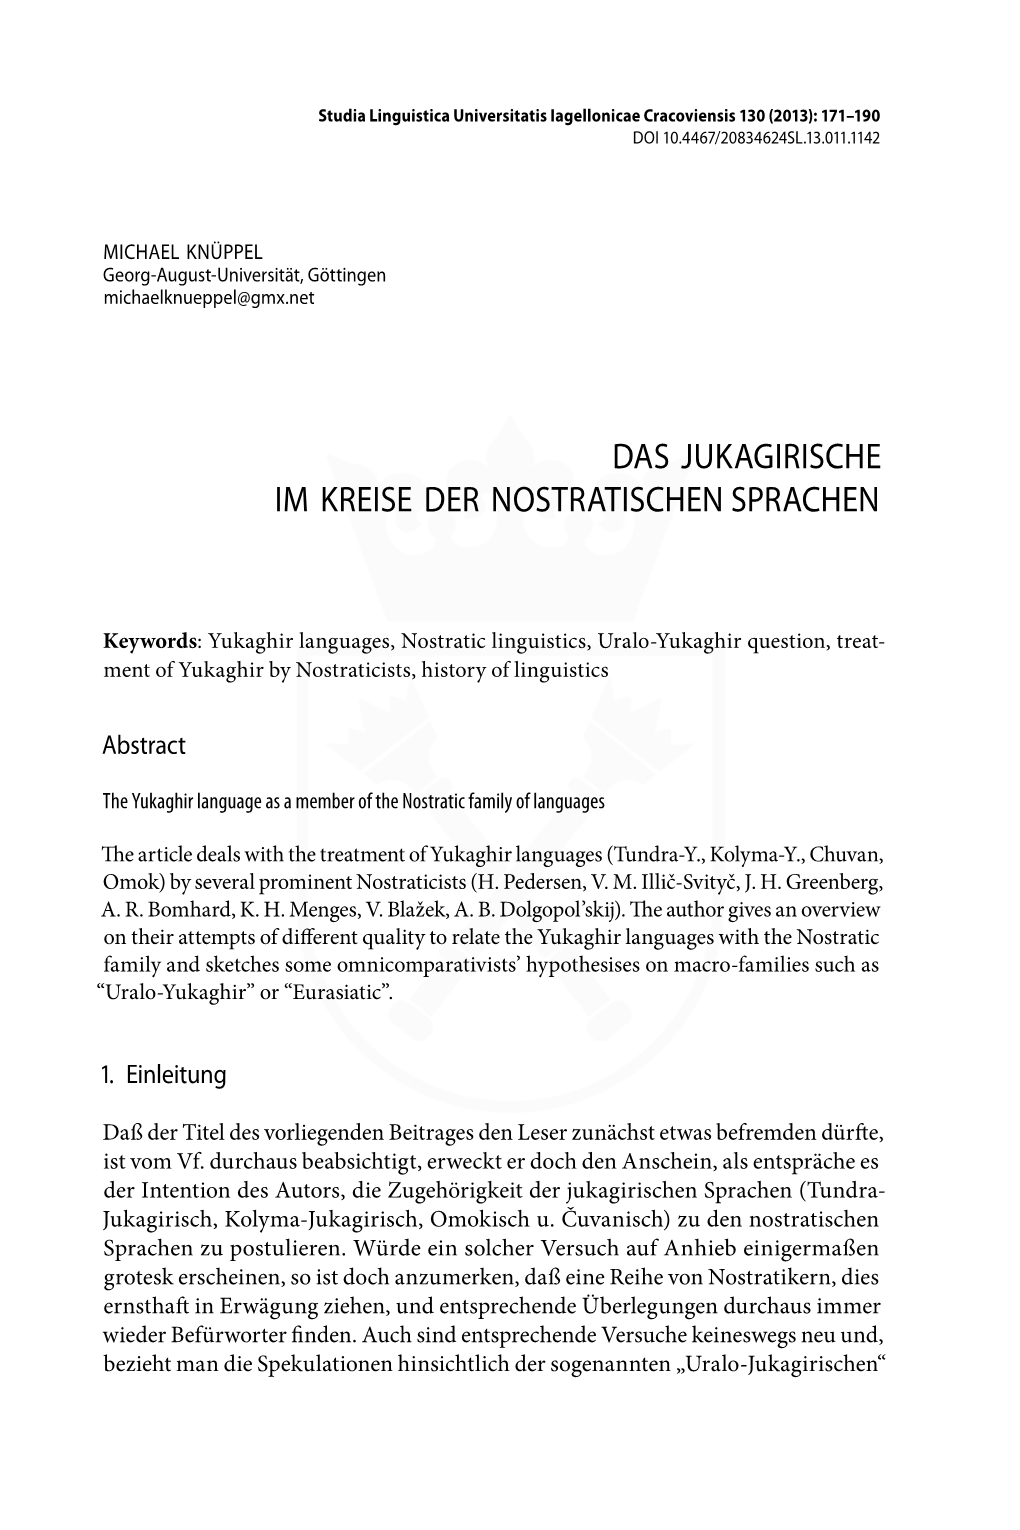 Das Jukagirische Im Kreise Der Nostratischen Sprachen